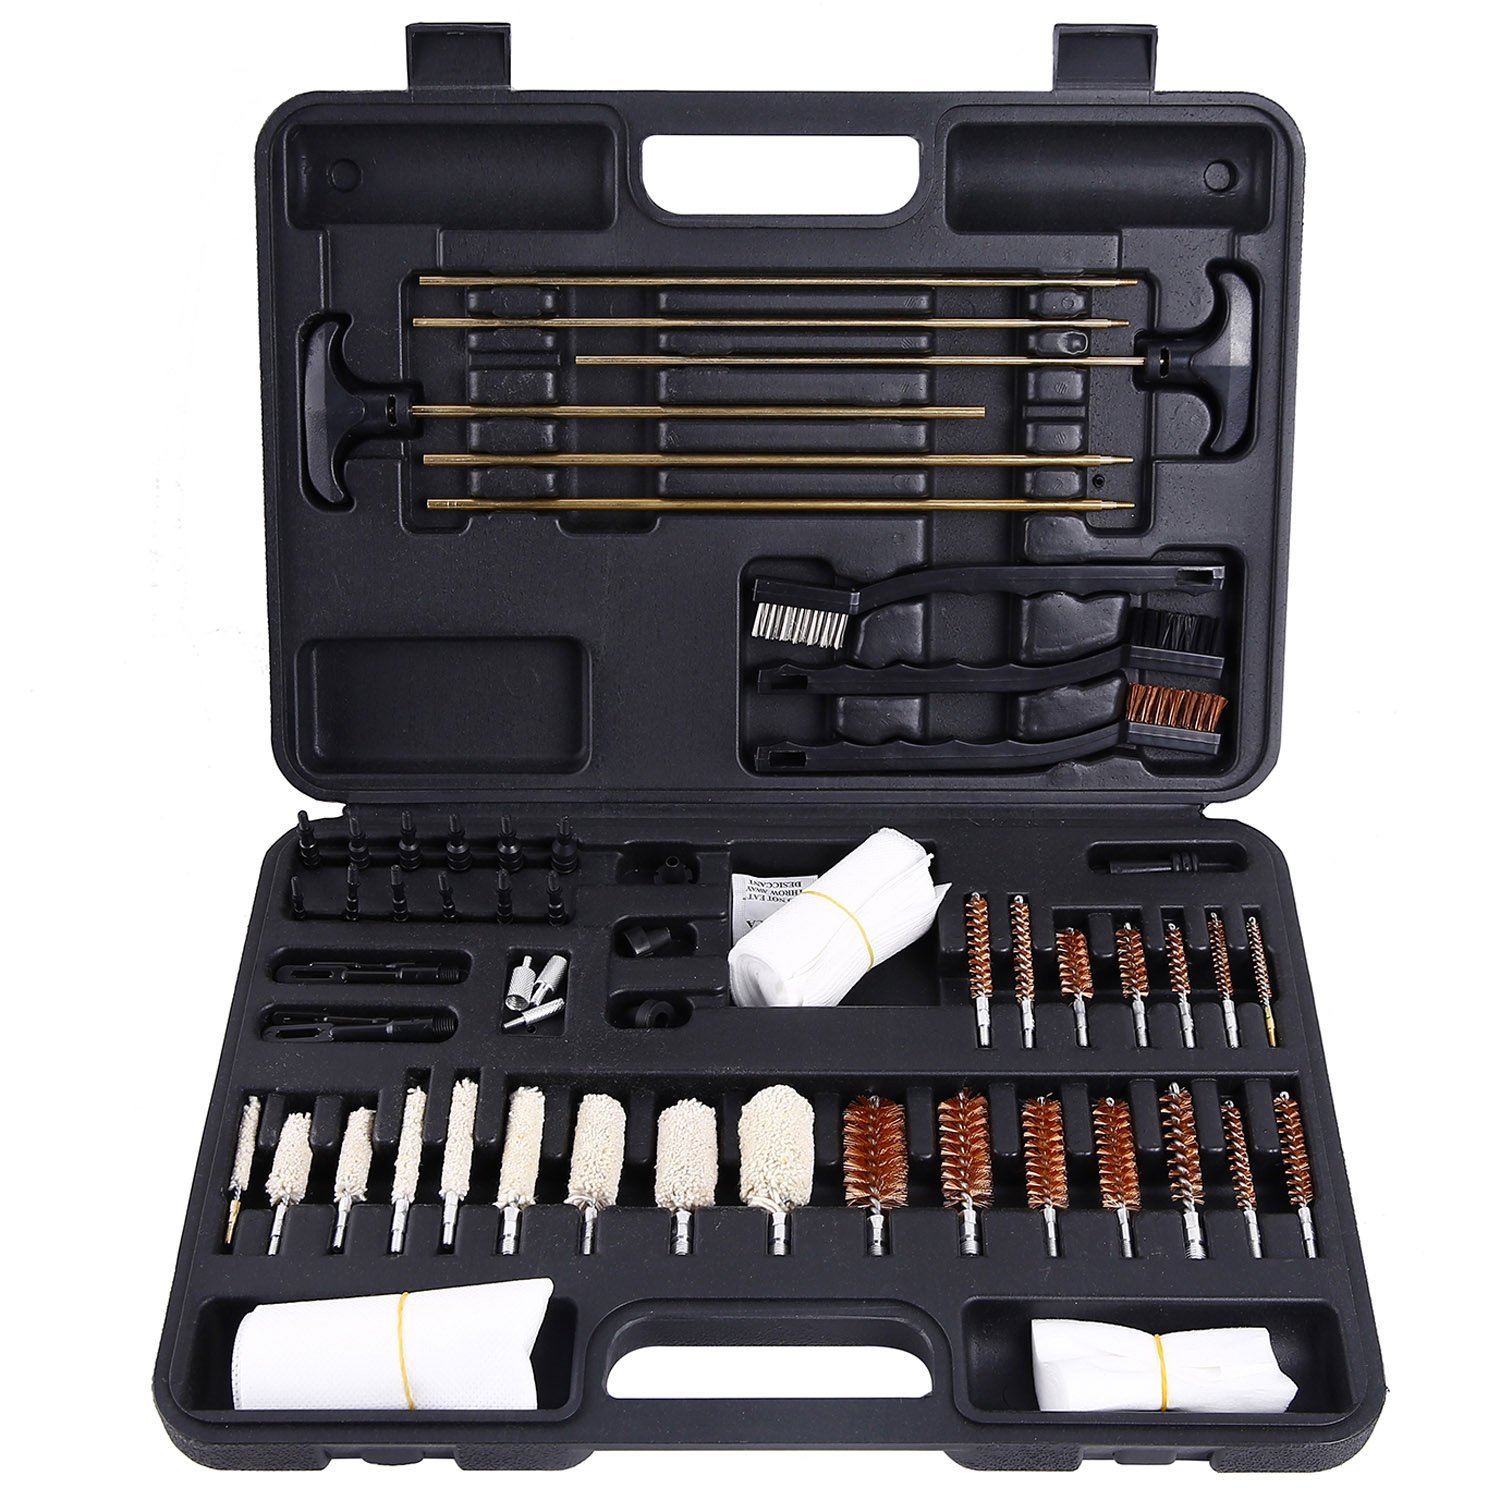 Ohuhu Gun Cleaning Kit 58 Pieces Hand Gun, Rifle & Shot Gun Cleaning Kits Tool Set with Carrying Case